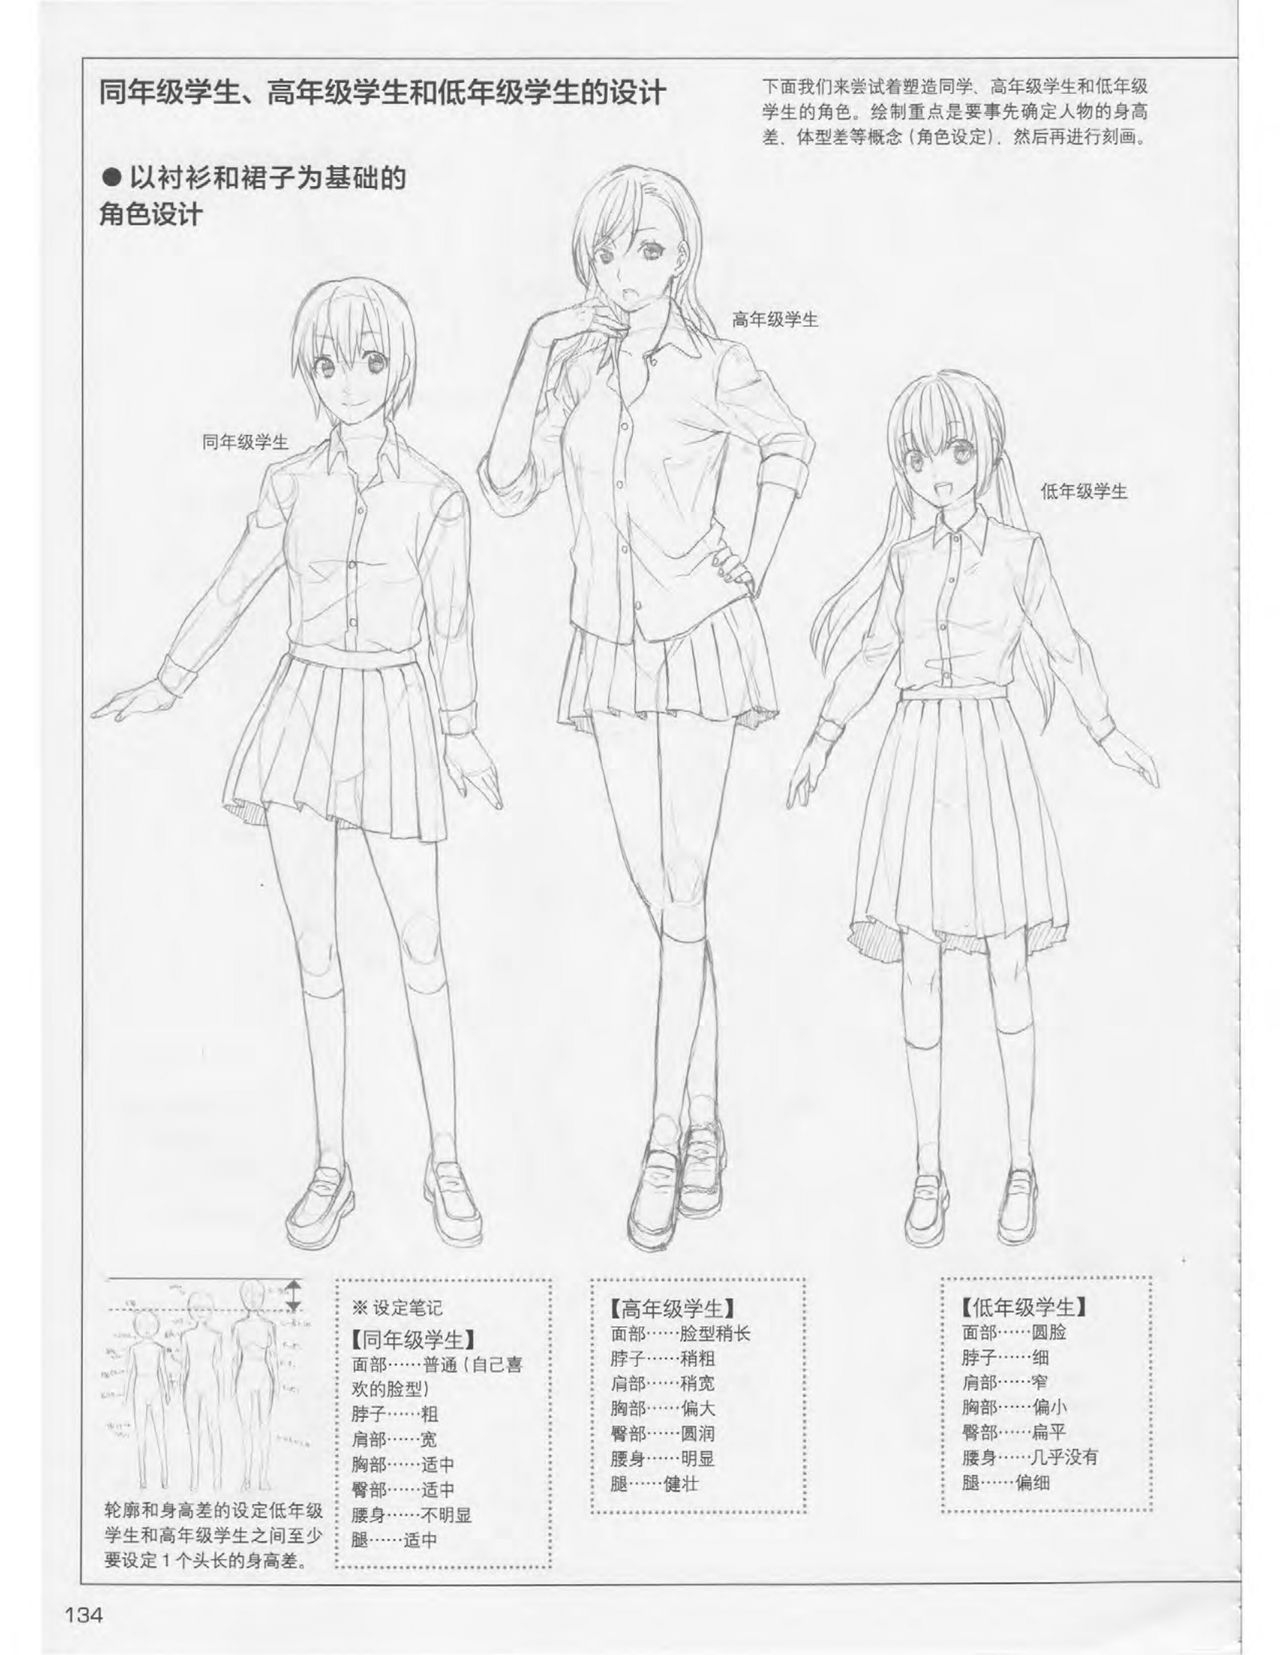 Japanese Manga Master Lecture 3: Lin Akira and Kakumaru Maru Talk About Glamorous Character Modeling 133